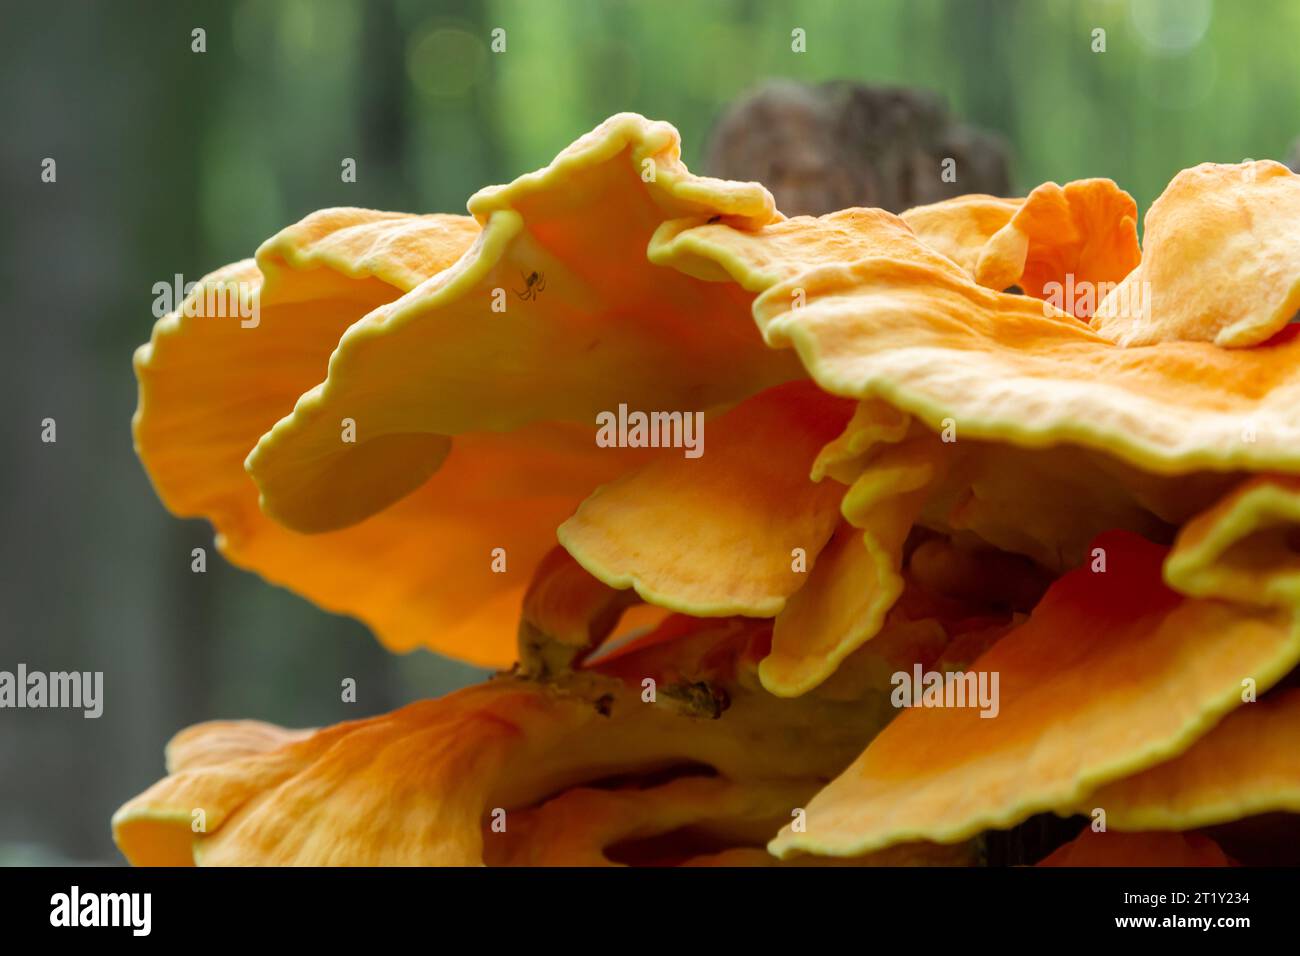 Orange mushroom fungi stump hi-res stock photography and images - Alamy